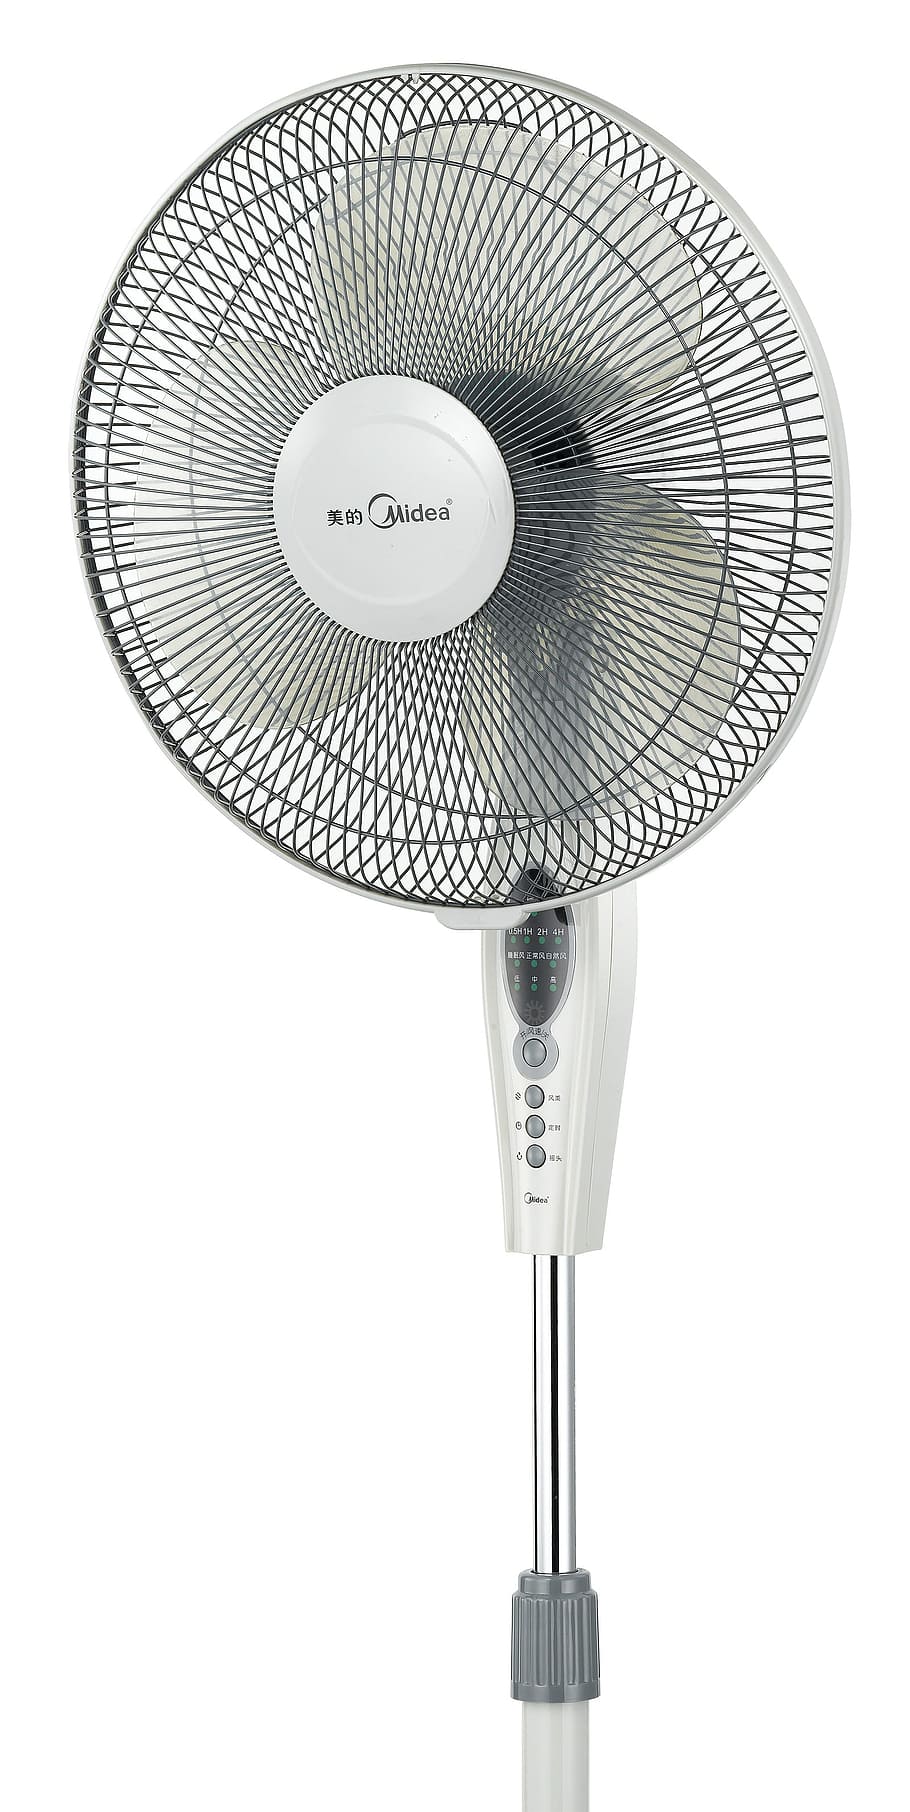 white pedestal fan, electric fans, blower, fan, wind turbine, motor, white background, studio shot, cut out, indoors